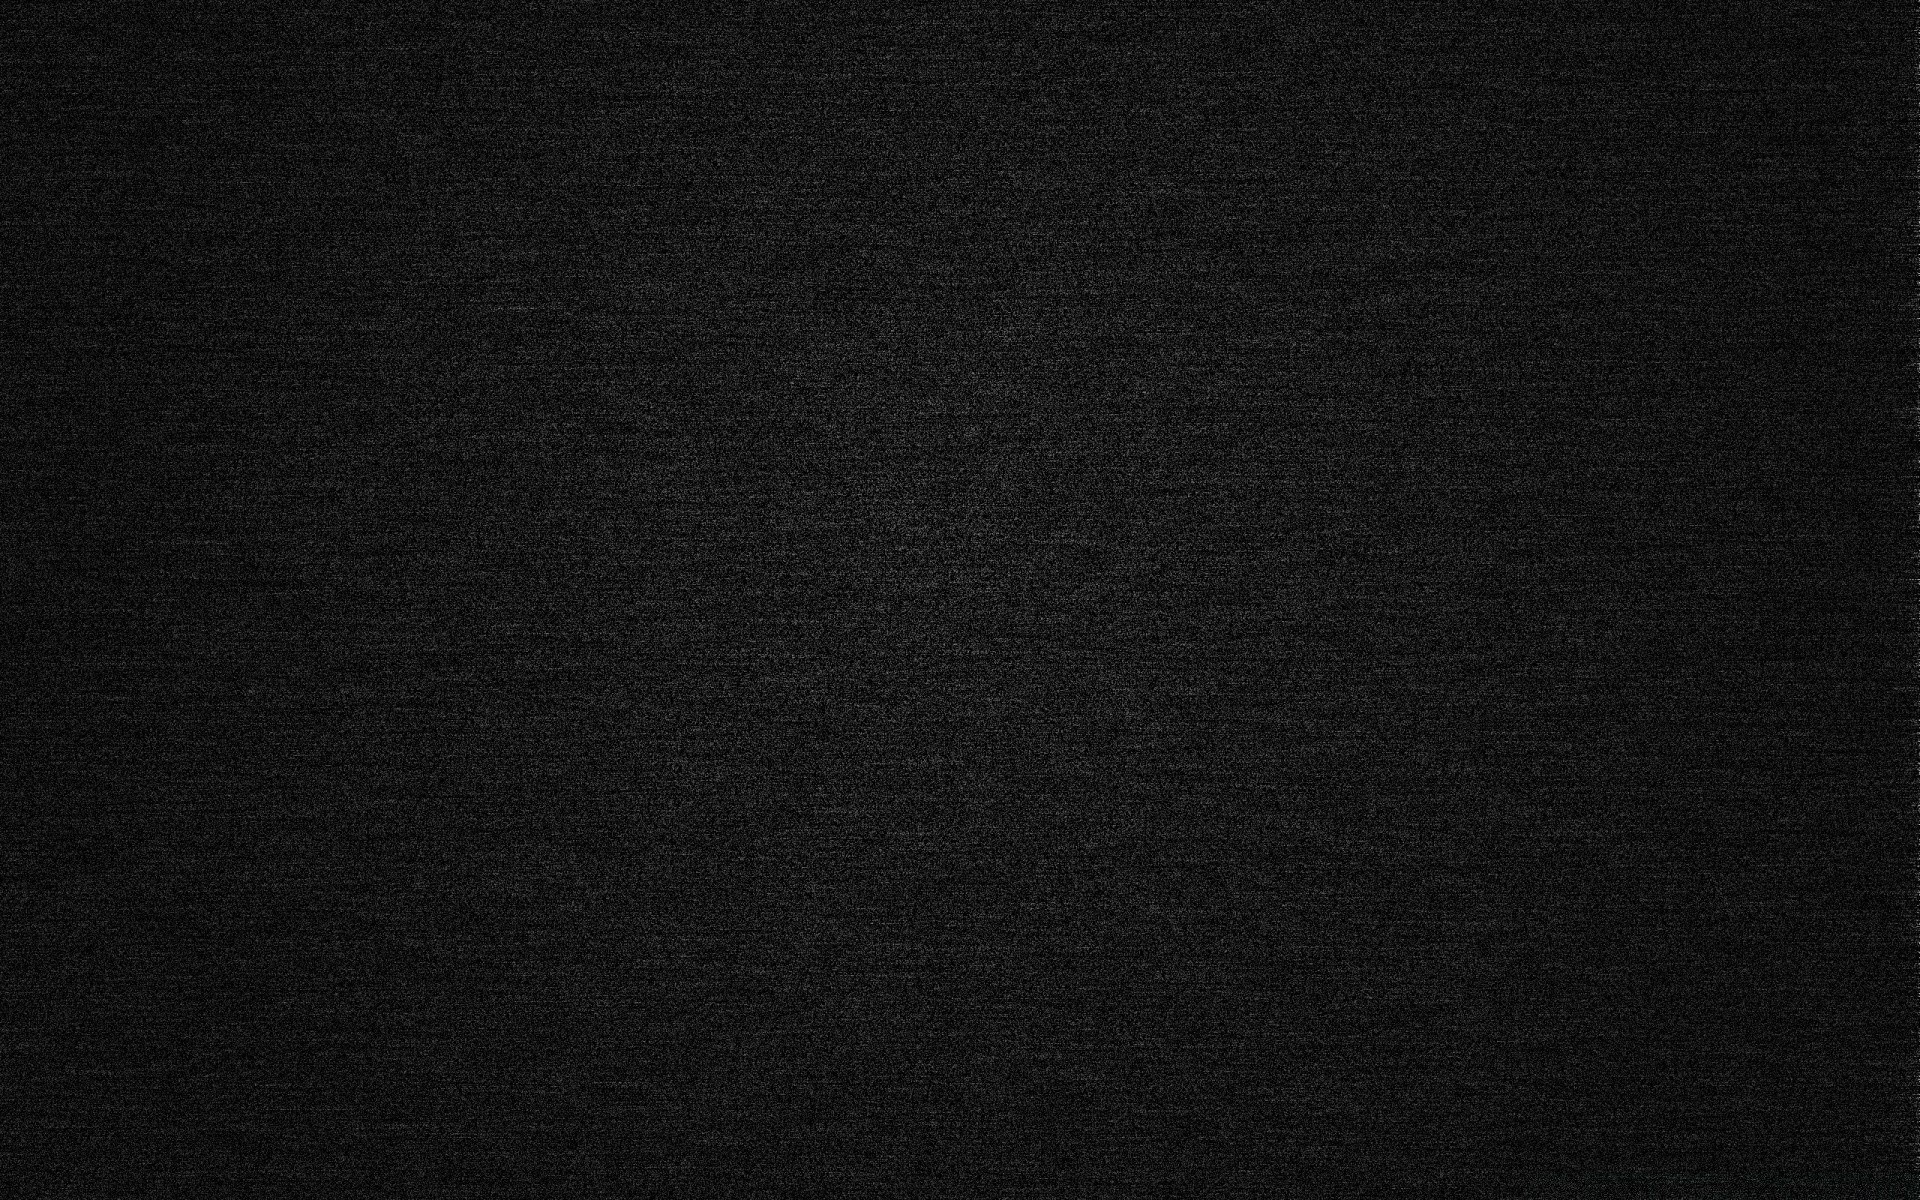 черное рабочего стола аннотация текстура темный фон шаблон носить ткань кожа роскошные обои пустые грубо строительство винтаж холст поверхность цвет качество старый